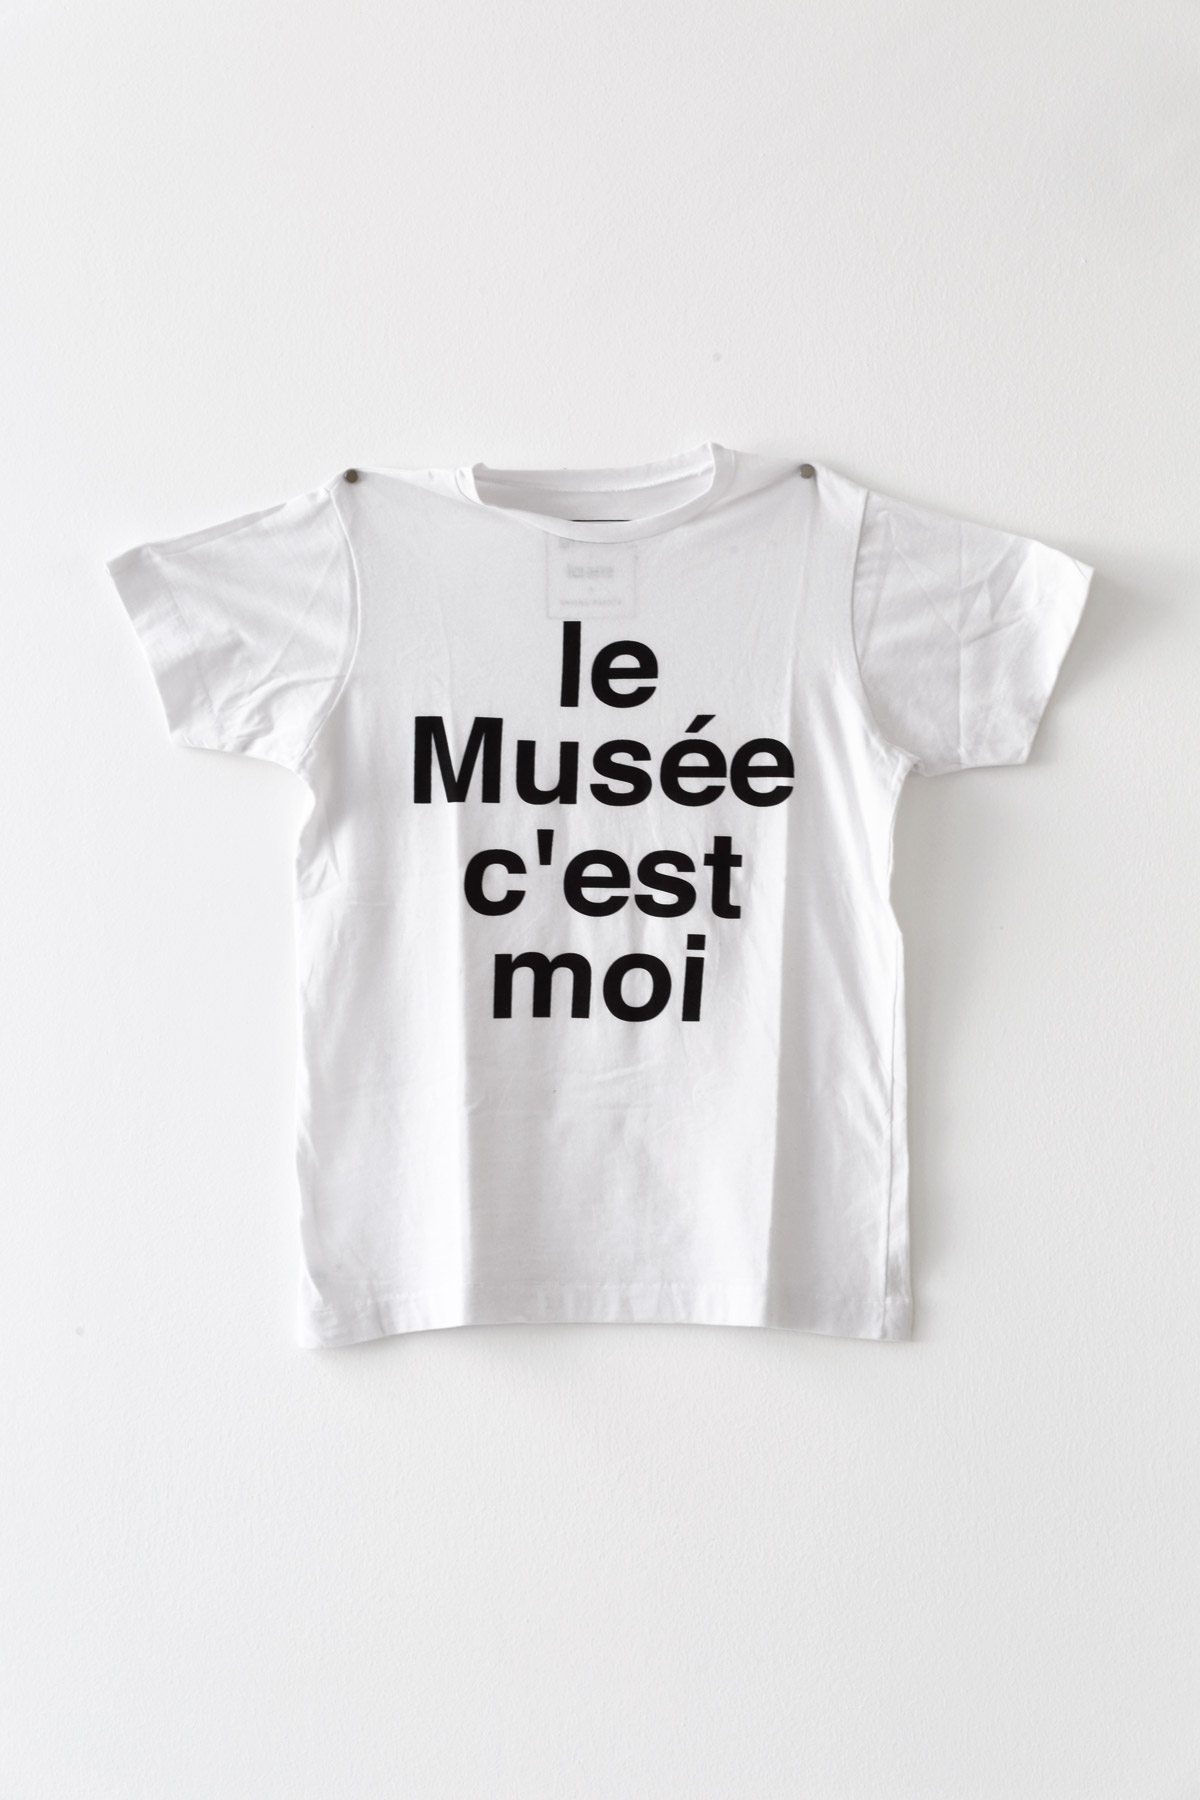 Leonel Pinola, Le musée c’est moi, 2013, printed t-shirt. Courtesy of La Ene.